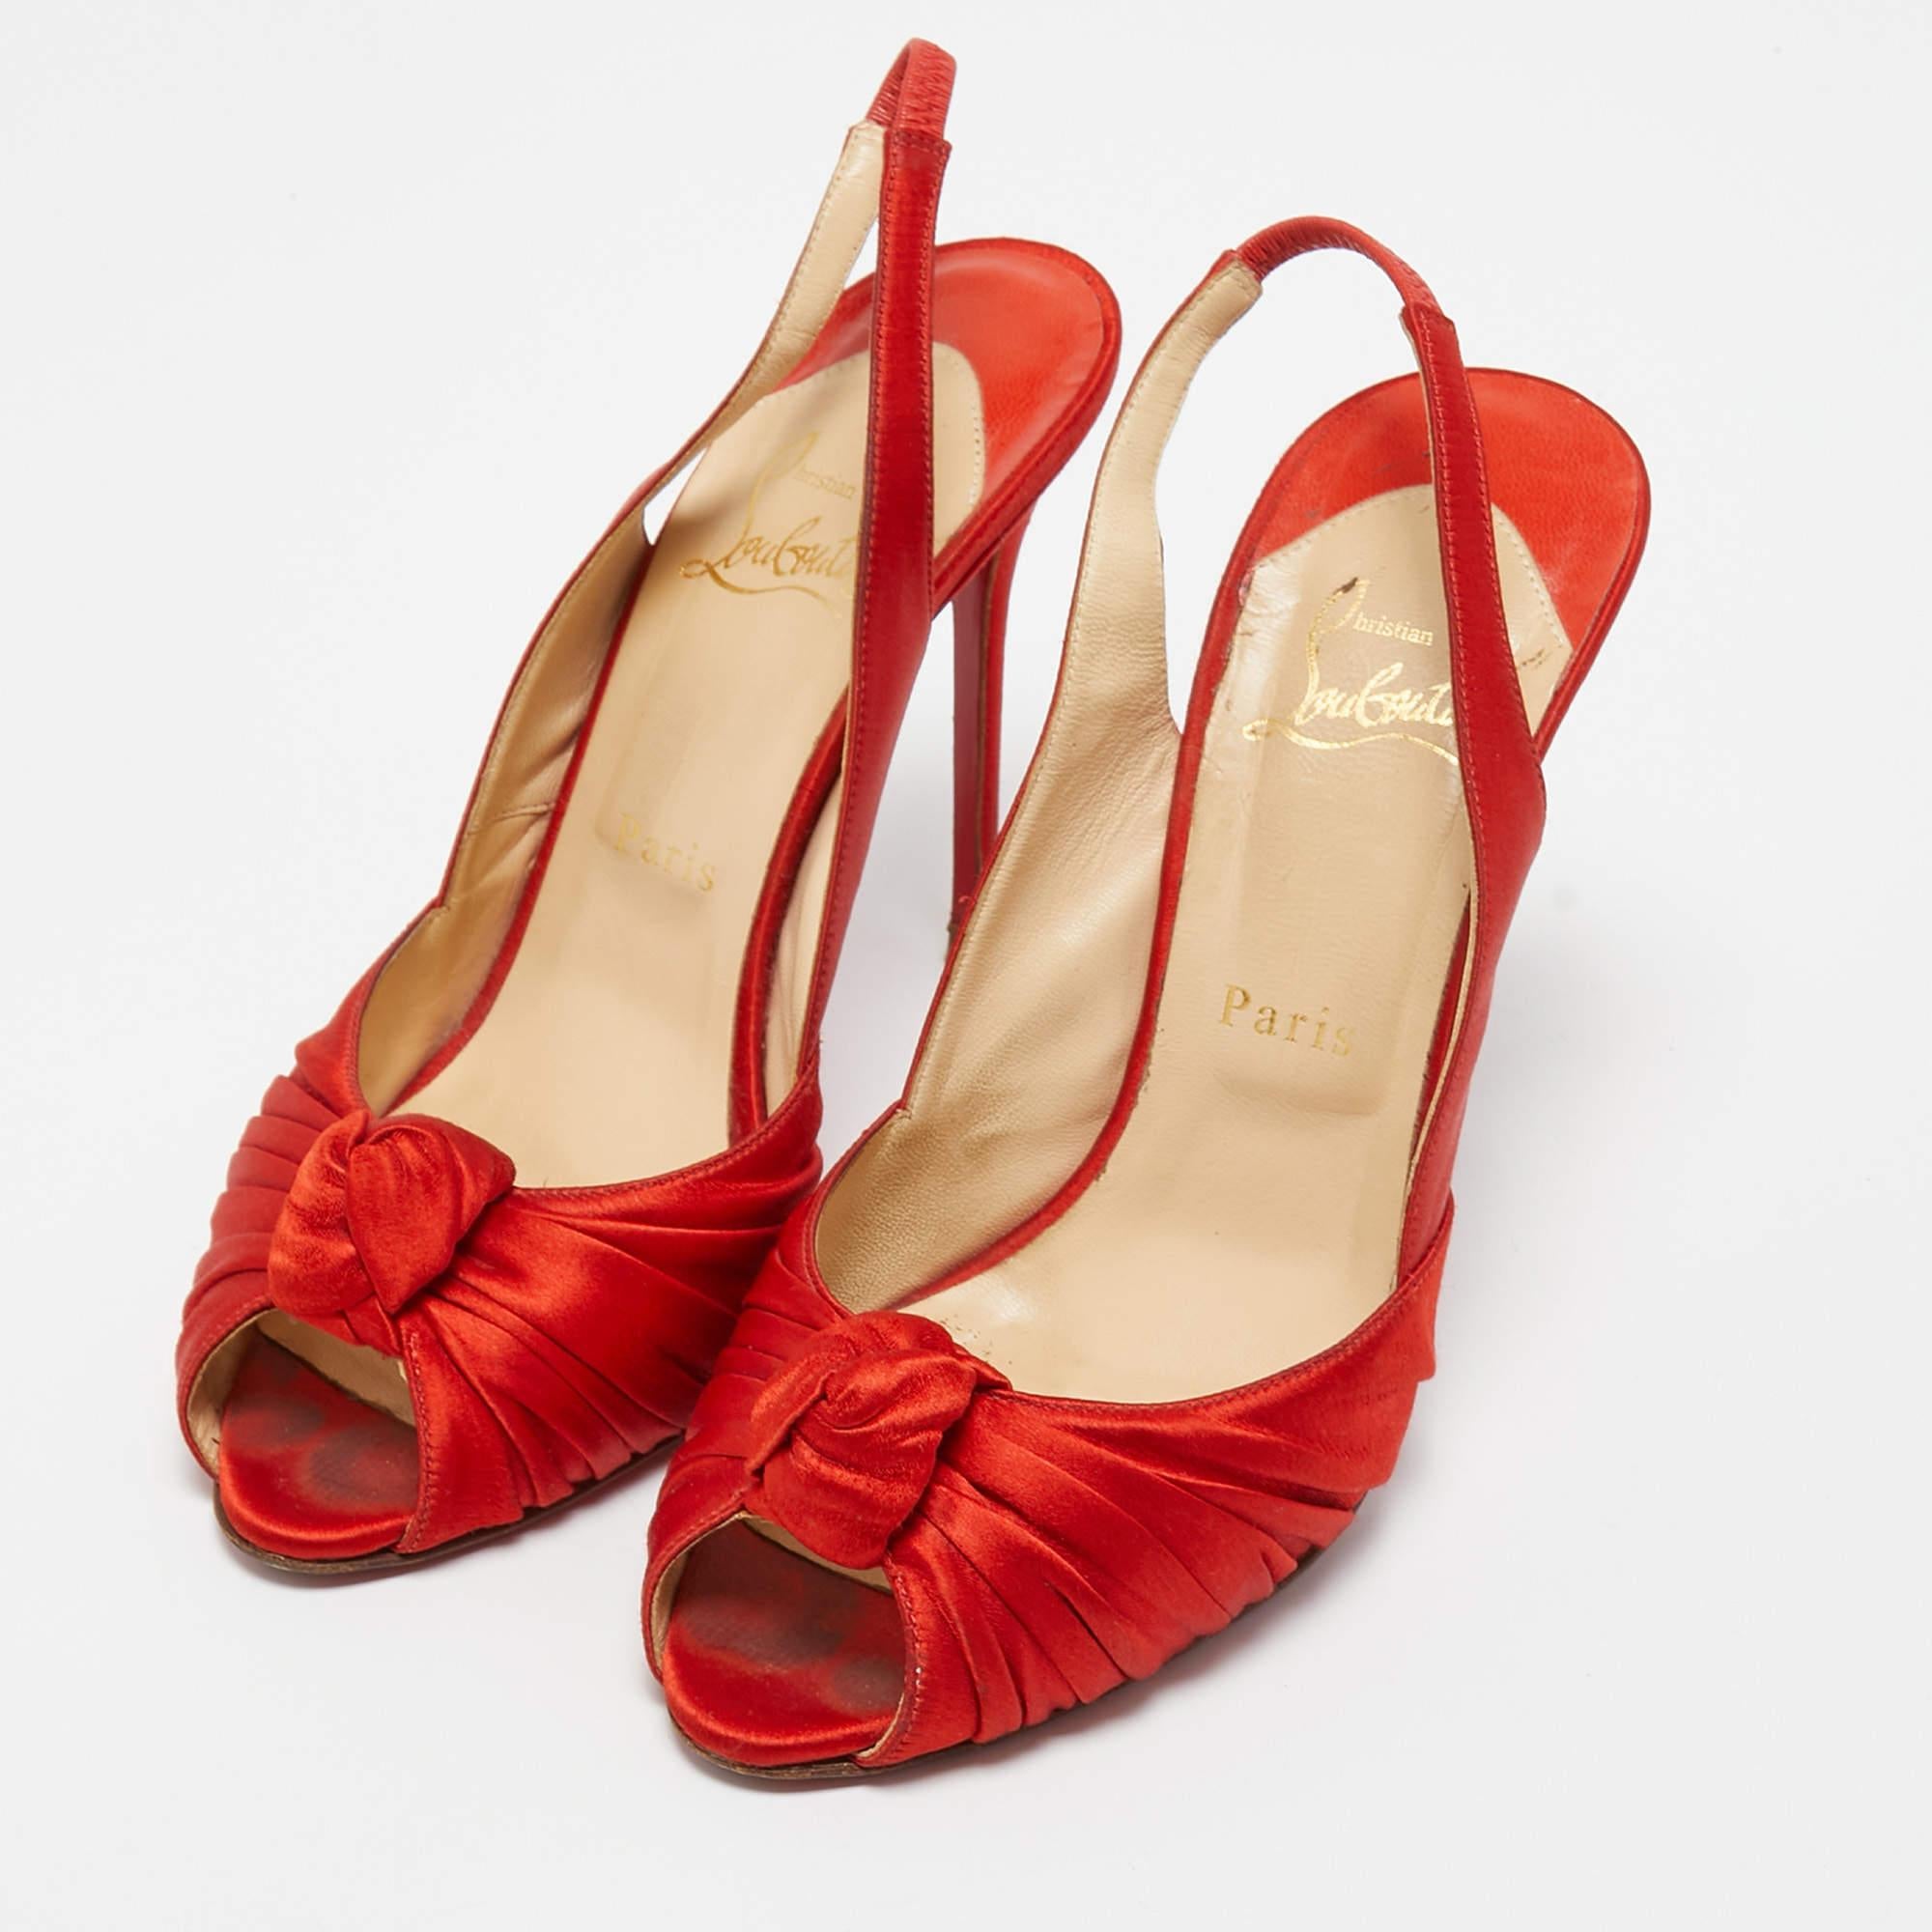 Ces escarpins rouges de Christian sont destinés à être un choix aimé. Merveilleusement confectionnés et équilibrés sur des talons élégants, les escarpins à bride soulèveront vos pieds dans une silhouette éblouissante.

